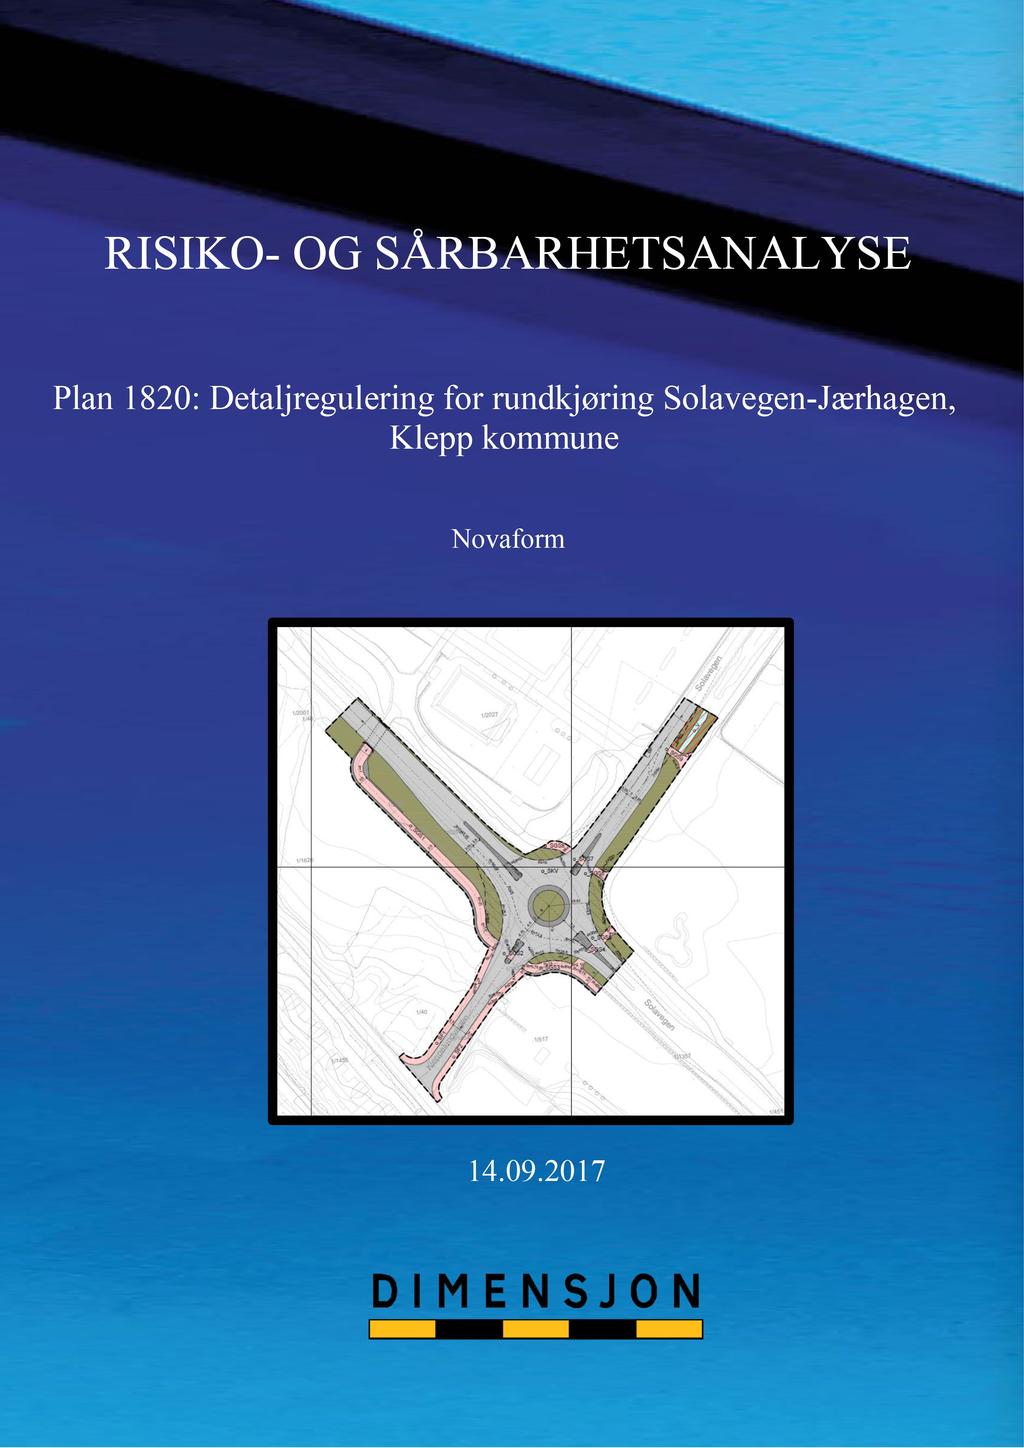 RISIKO - OG SÅRBARHETS ANALYS E Plan 1820: Detaljregulering for rundkjøring Solavegen - Jærhagen, Klepp kommune 14.